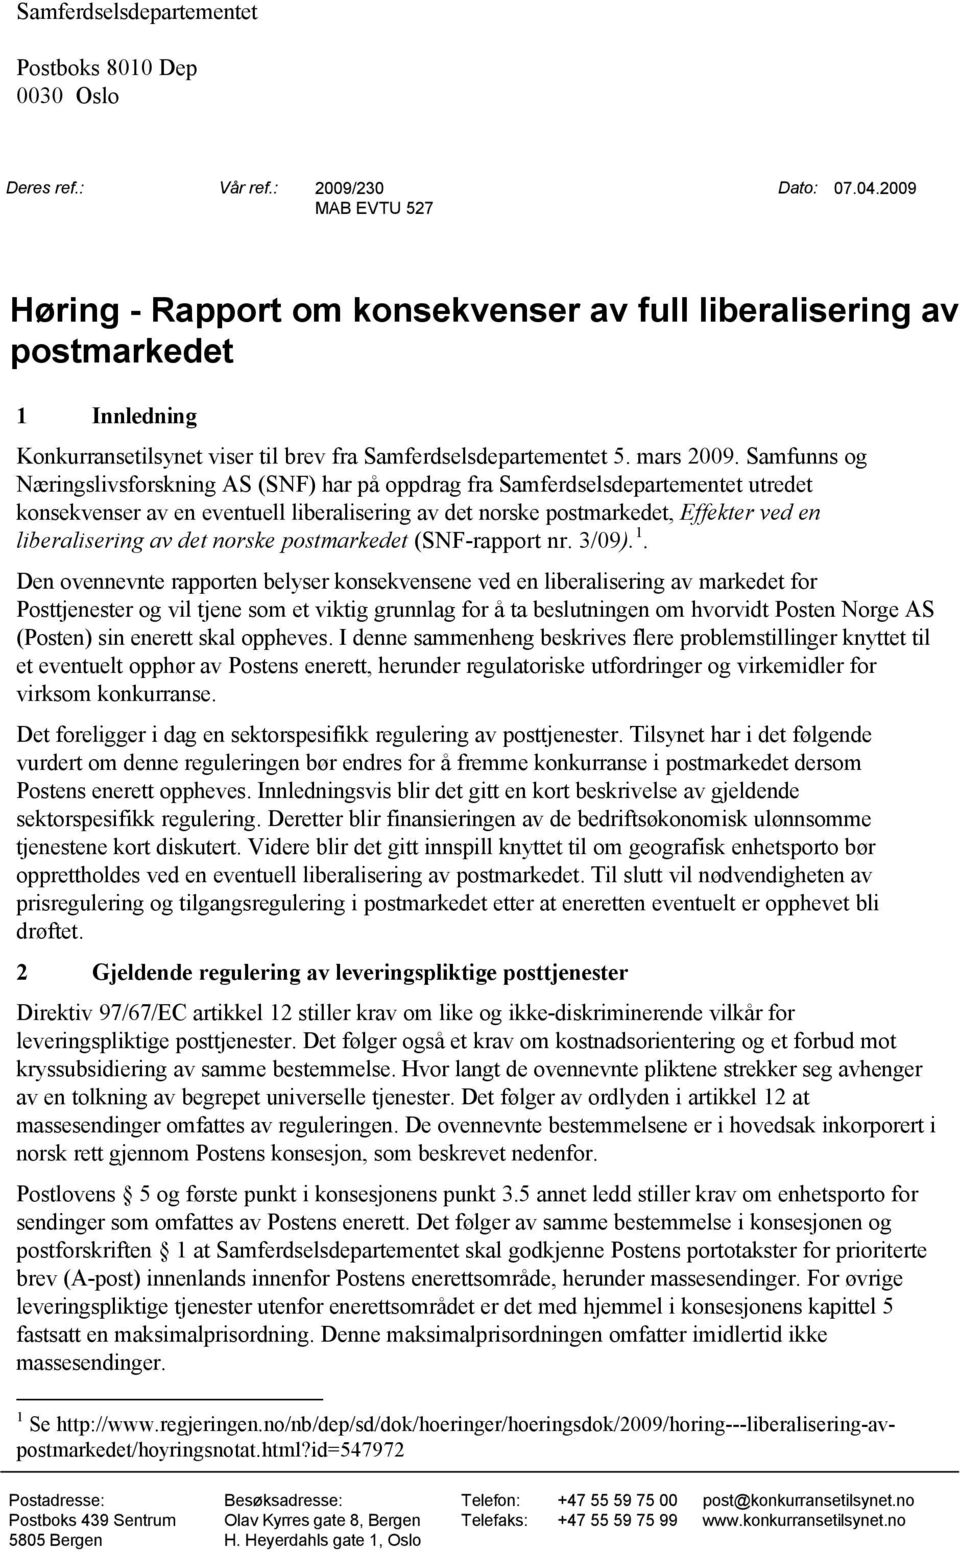 Samfunns og Næringslivsforskning AS (SNF) har på oppdrag fra Samferdselsdepartementet utredet konsekvenser av en eventuell liberalisering av det norske postmarkedet, Effekter ved en liberalisering av